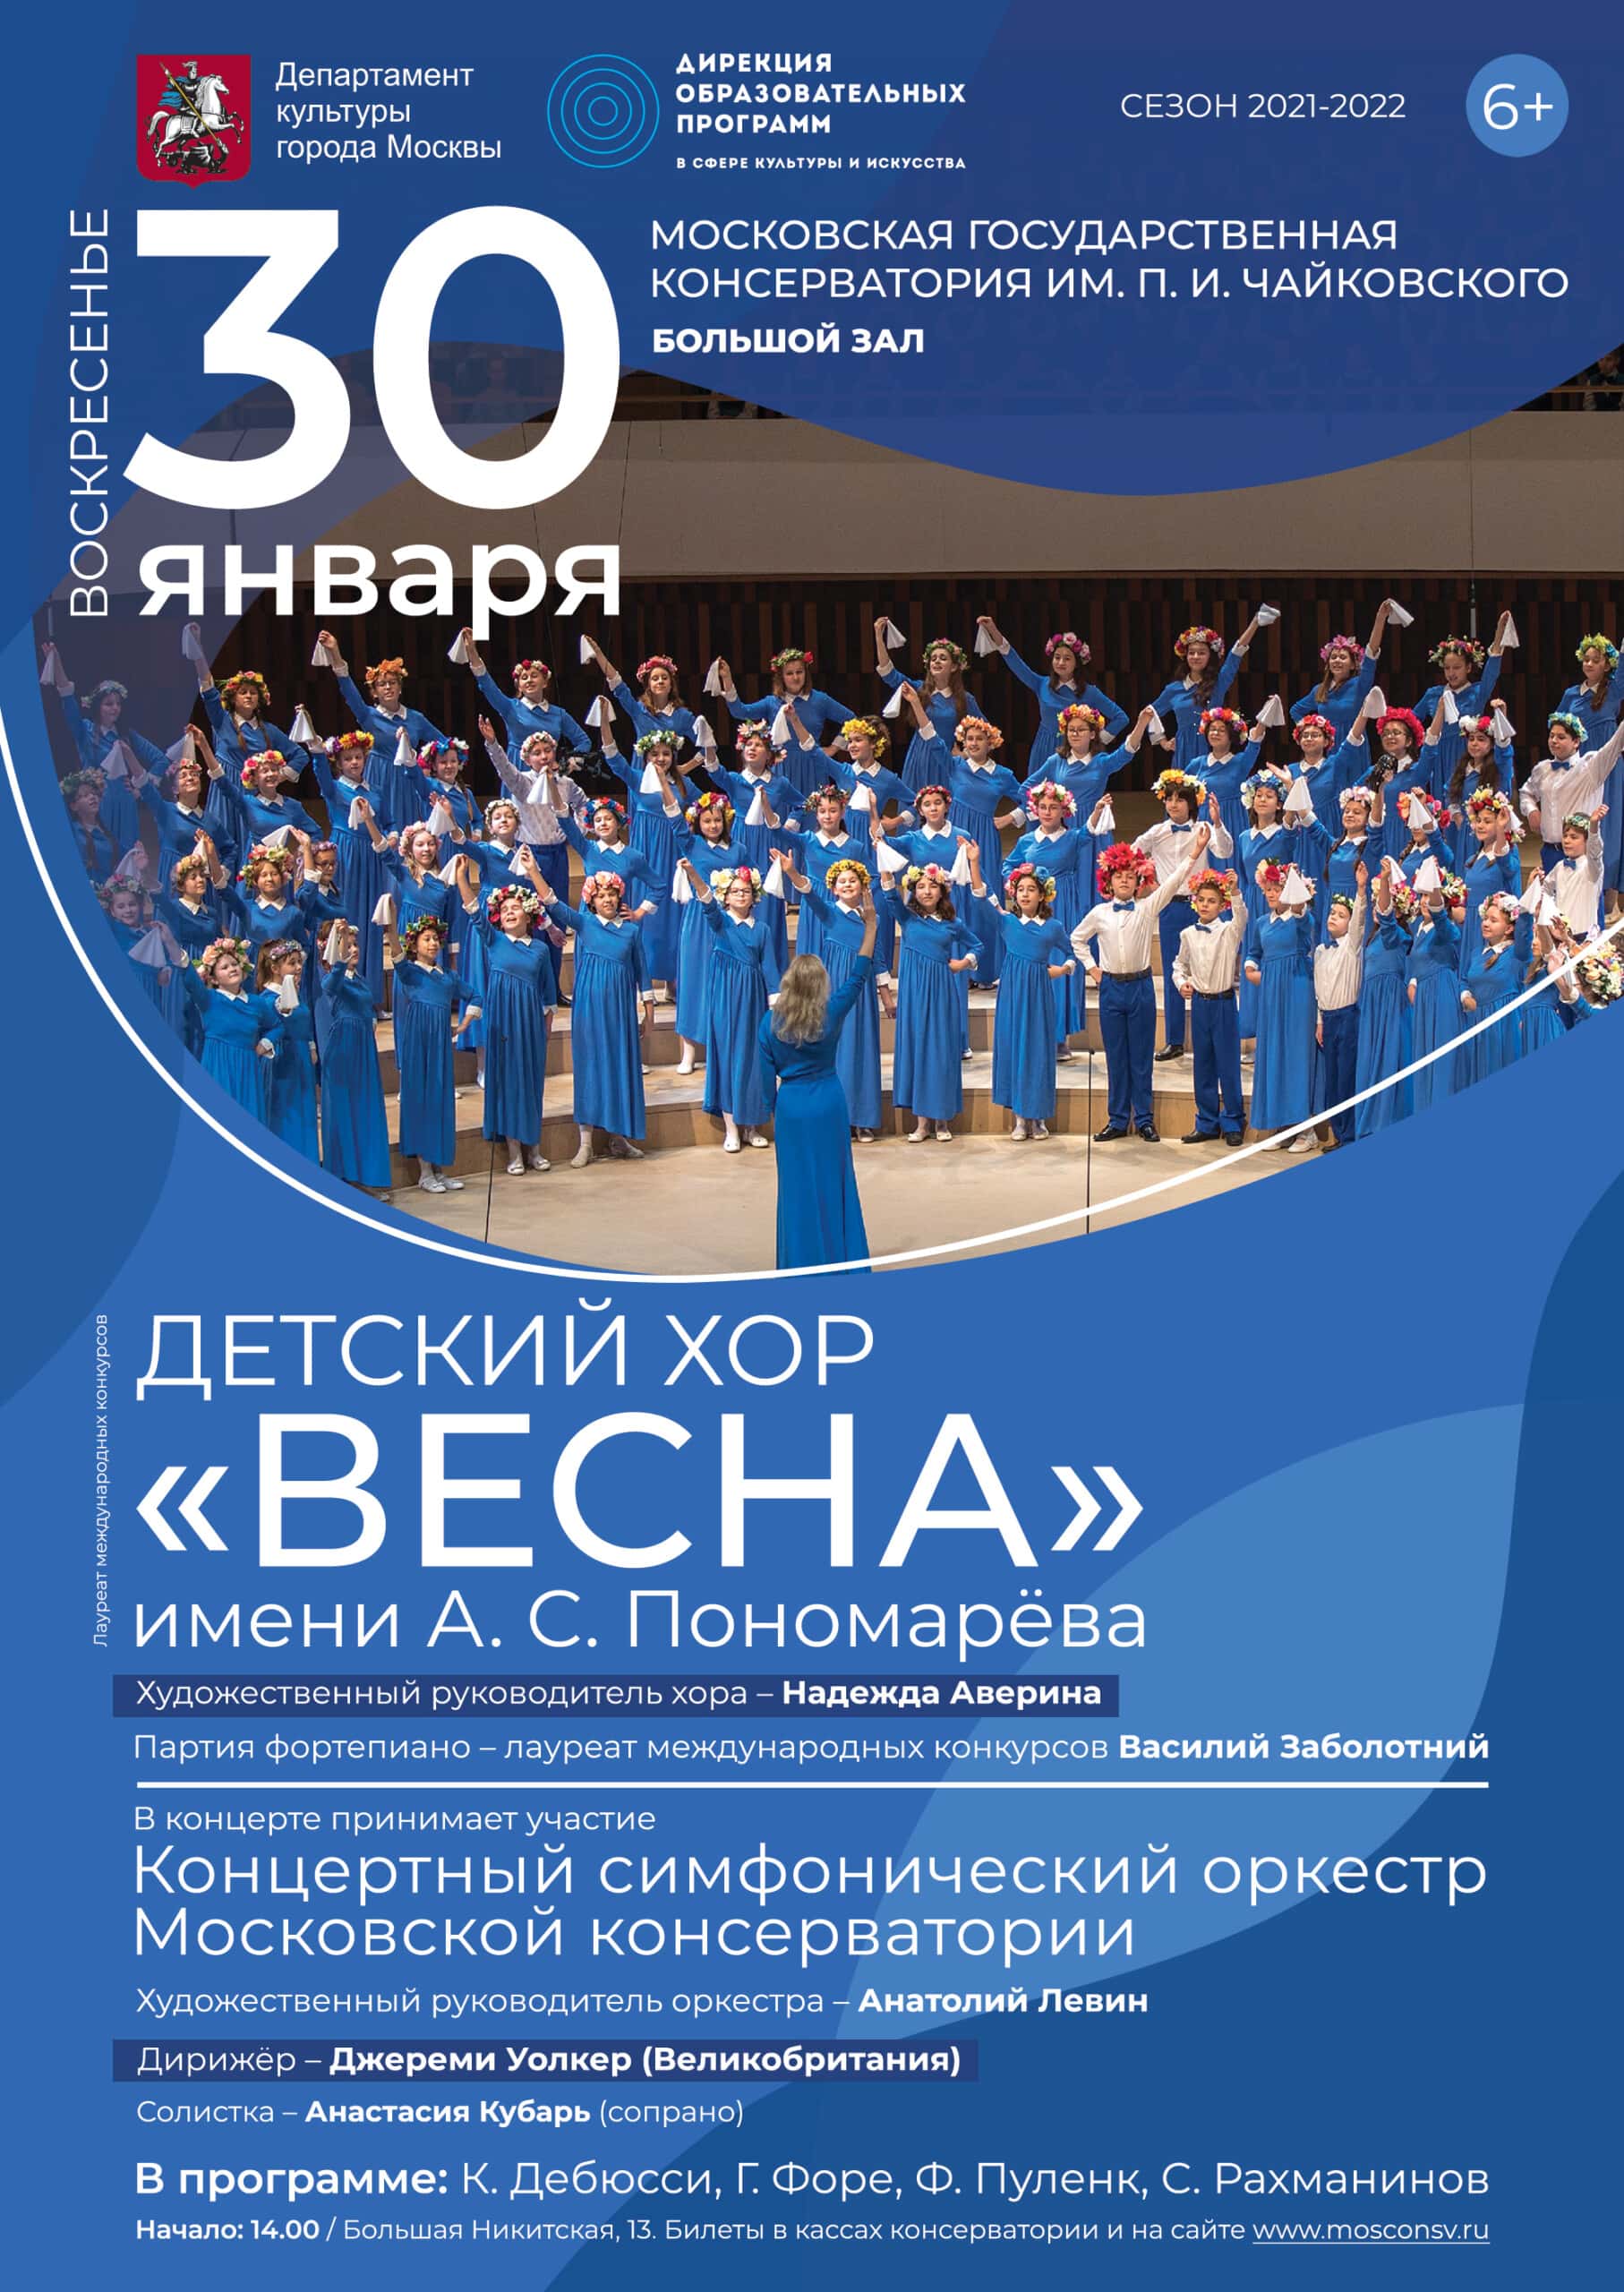 Детский хор "Весна" выступит в Большом зале Московской консерватории